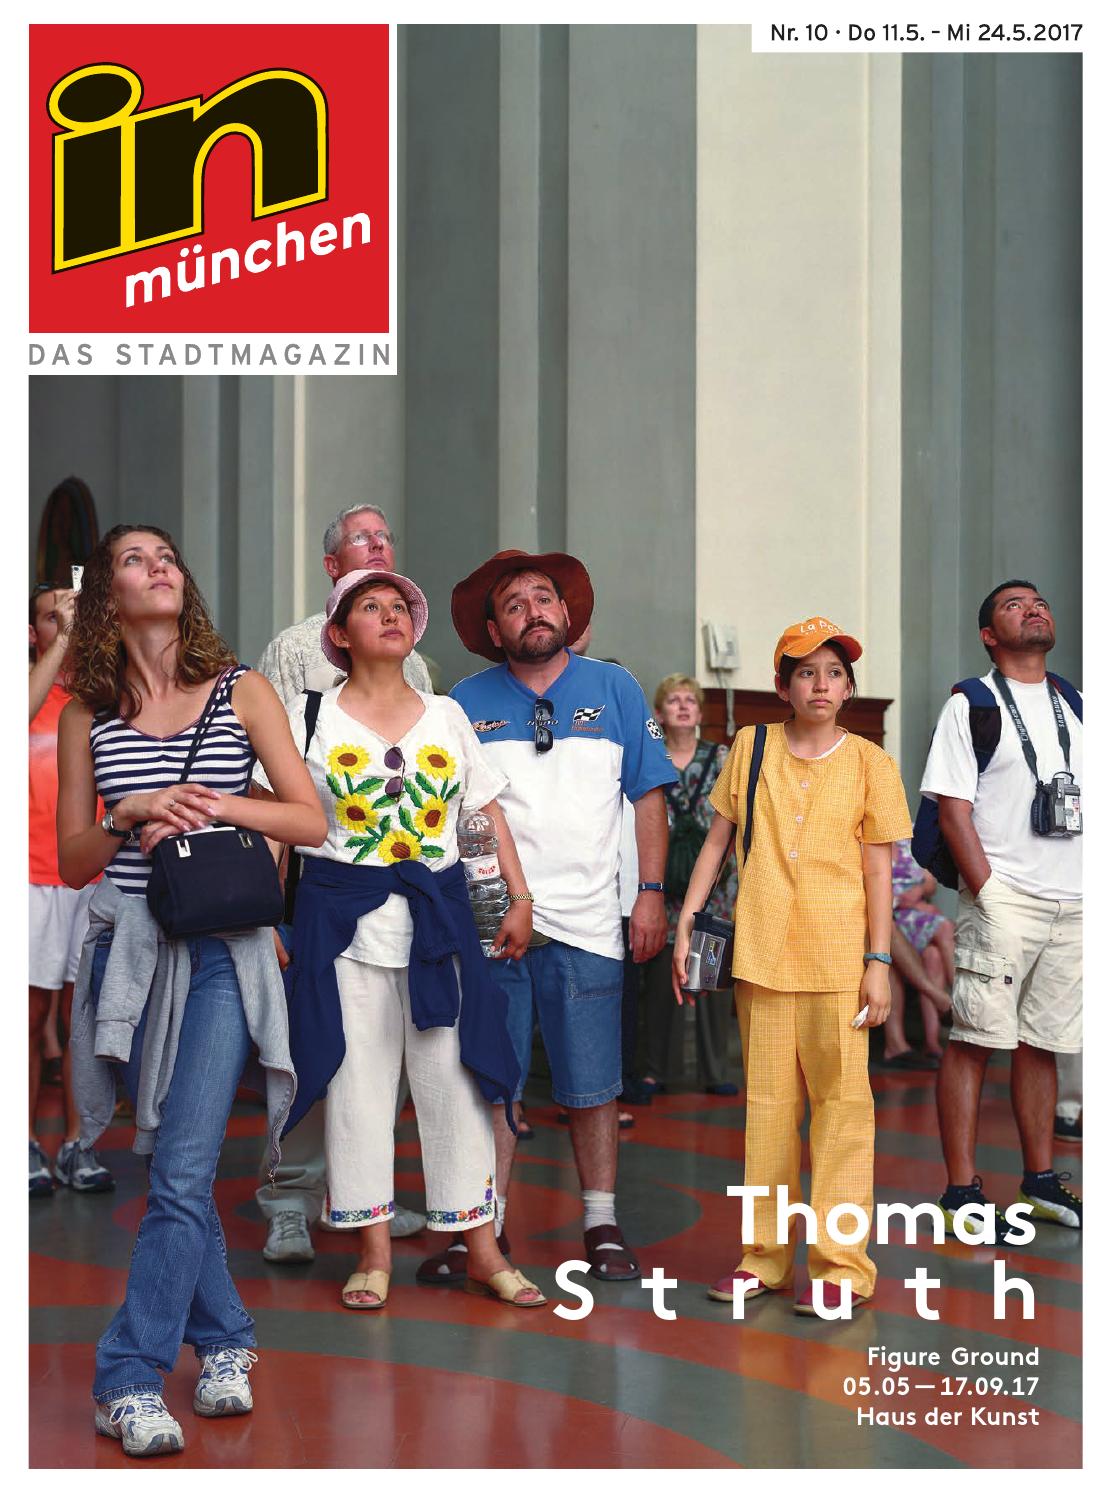 Biergarten Englischer Garten Best Of In München Ausgabe 10 2017 by In München Magazin issuu